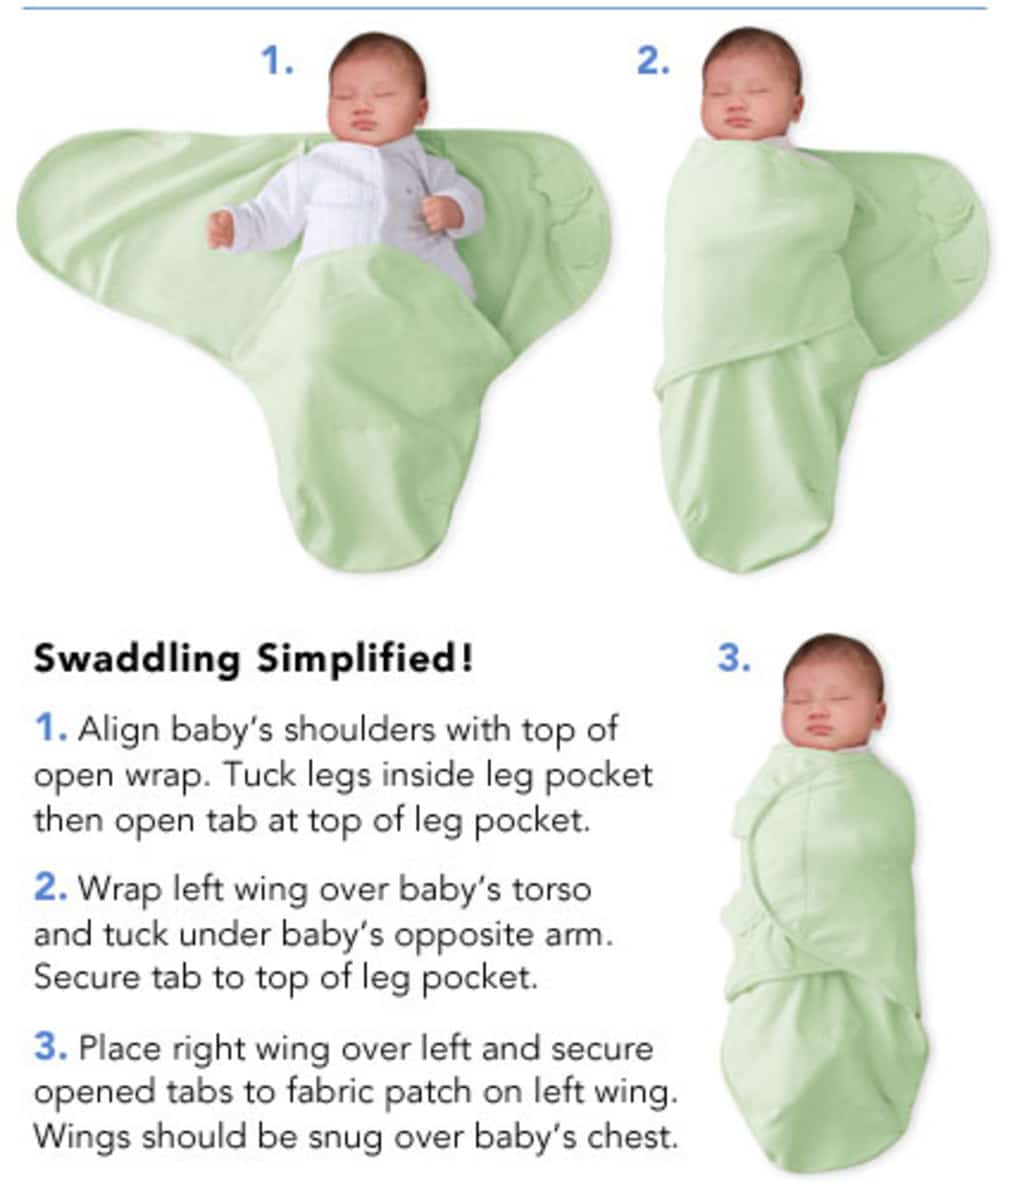 Baby Danger: Is Swaddling Safe?